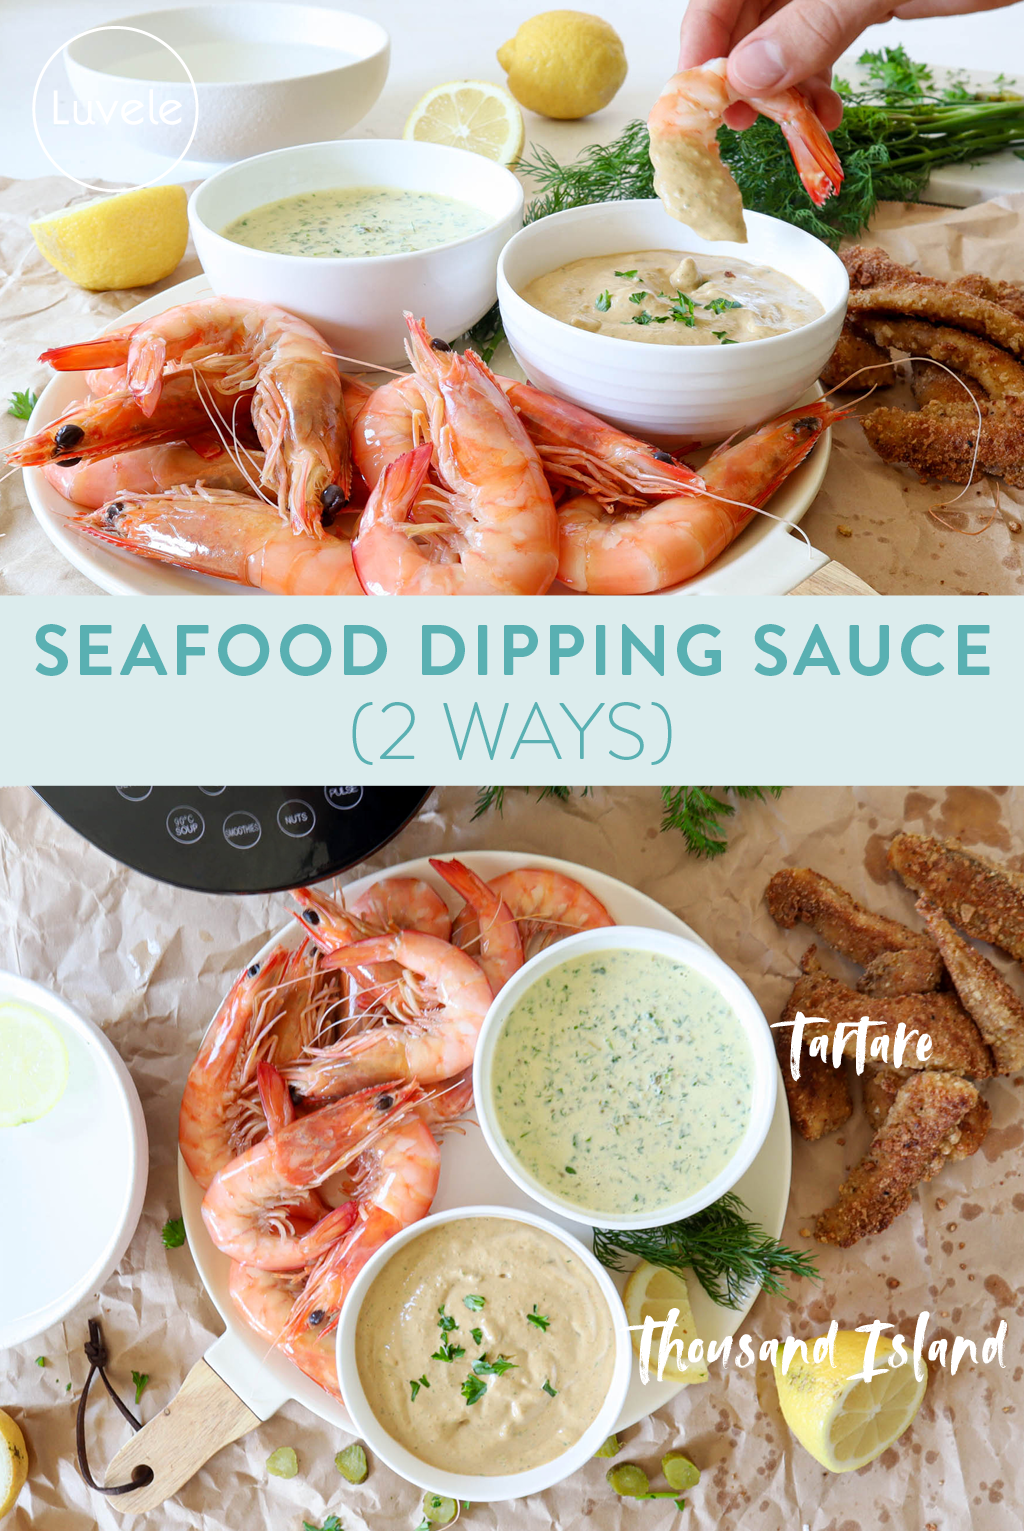 Seafood dipping sauce